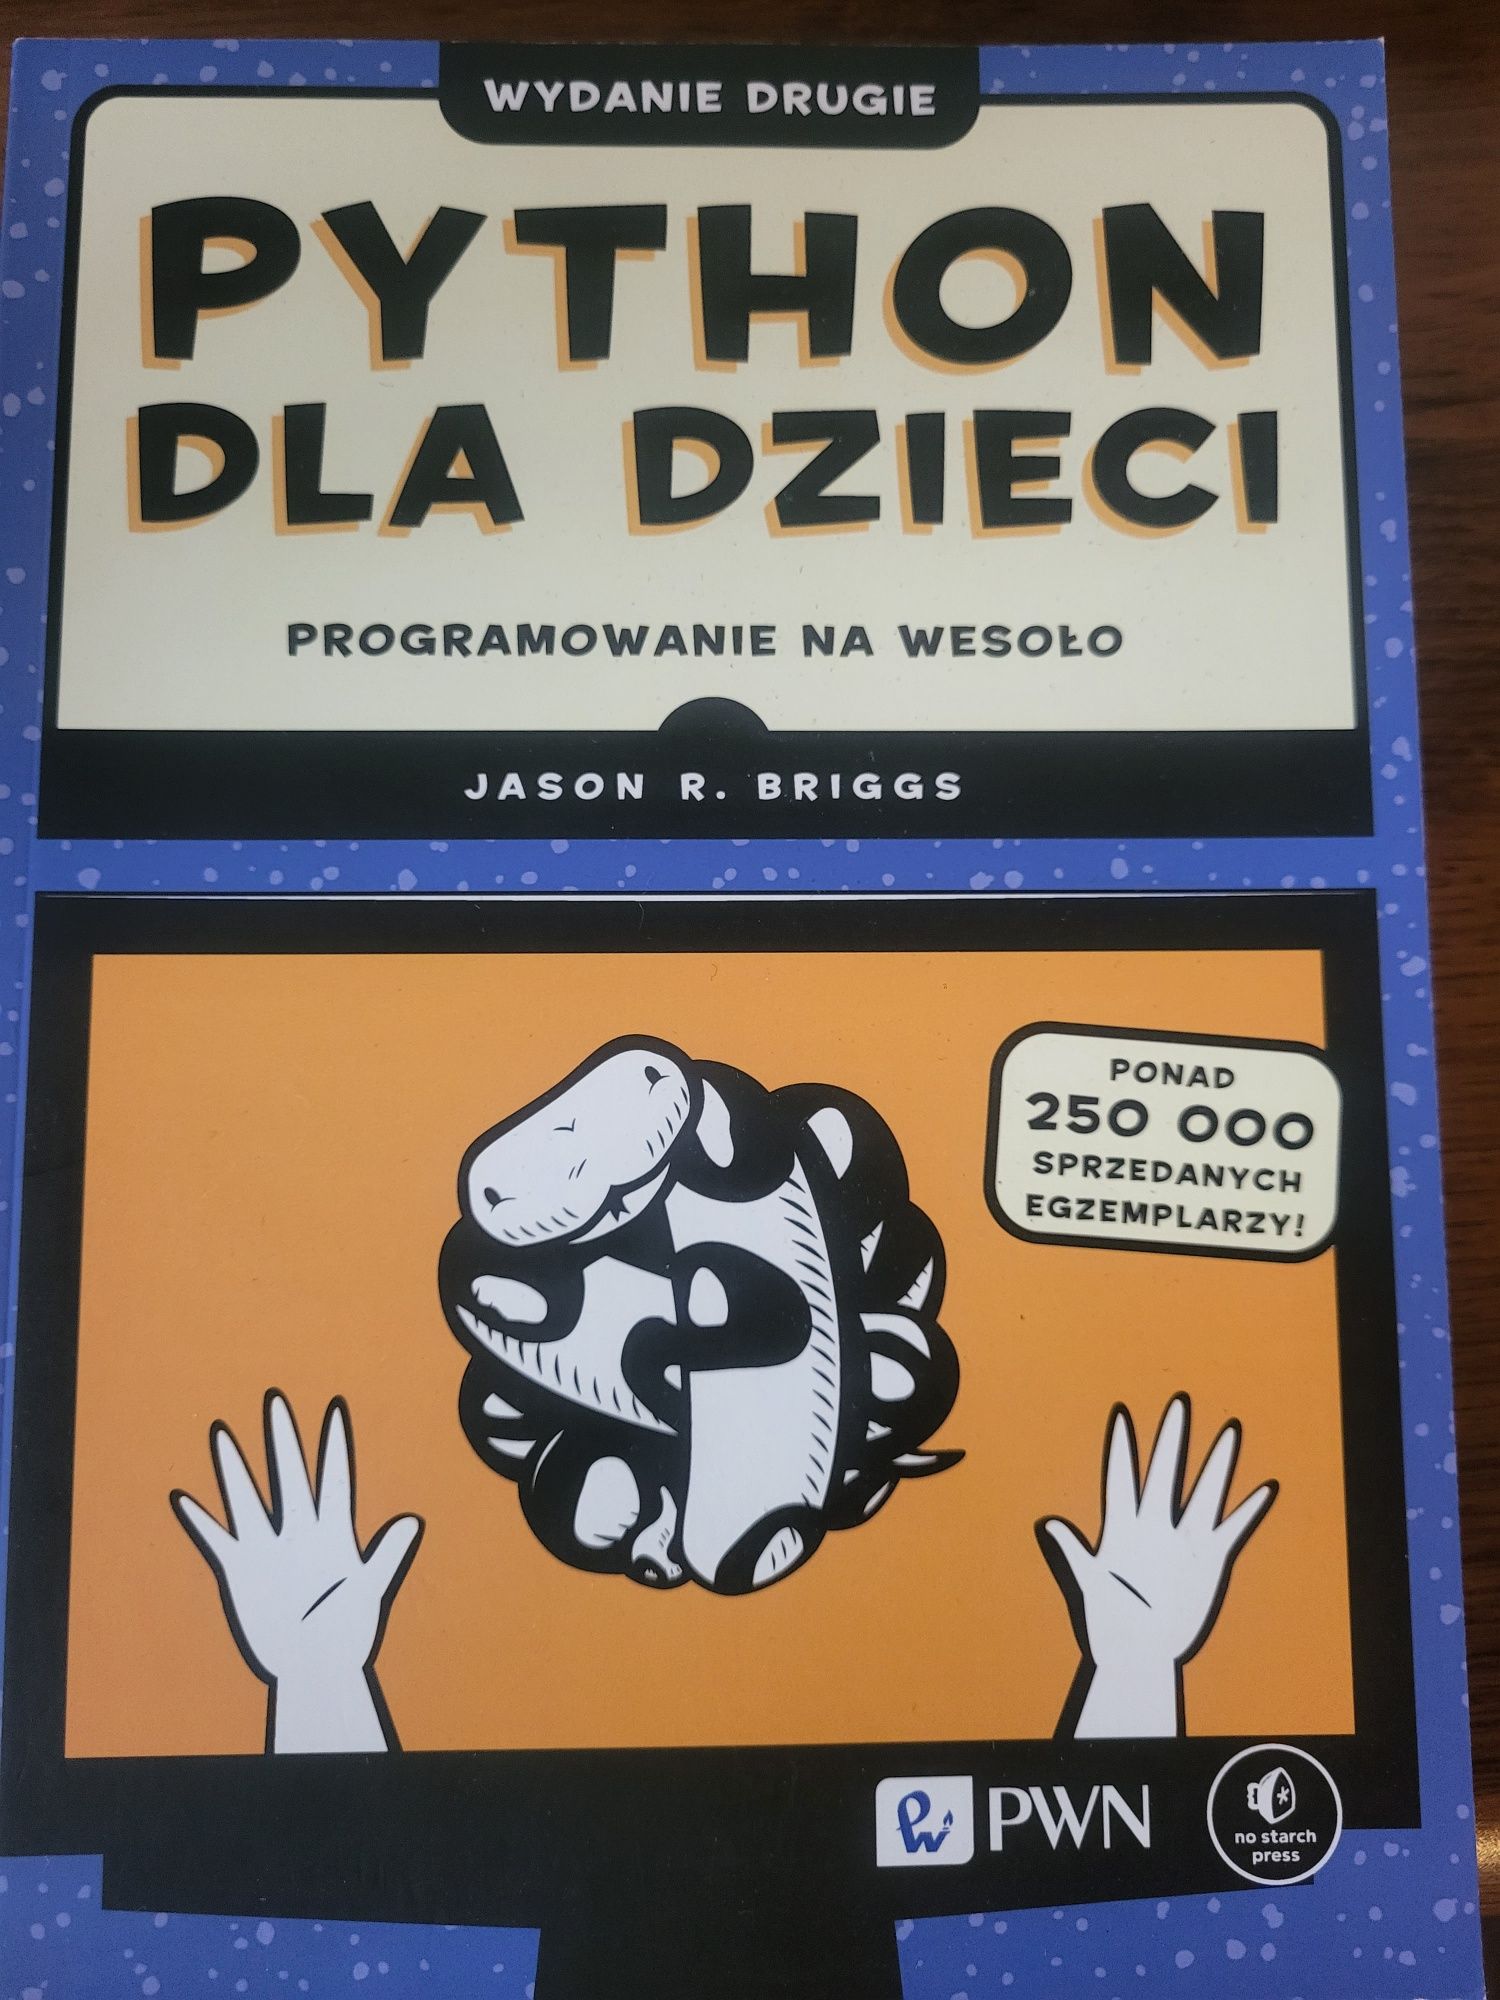 Python dla dzieci, wydanie drugie. Jason R. Briggs